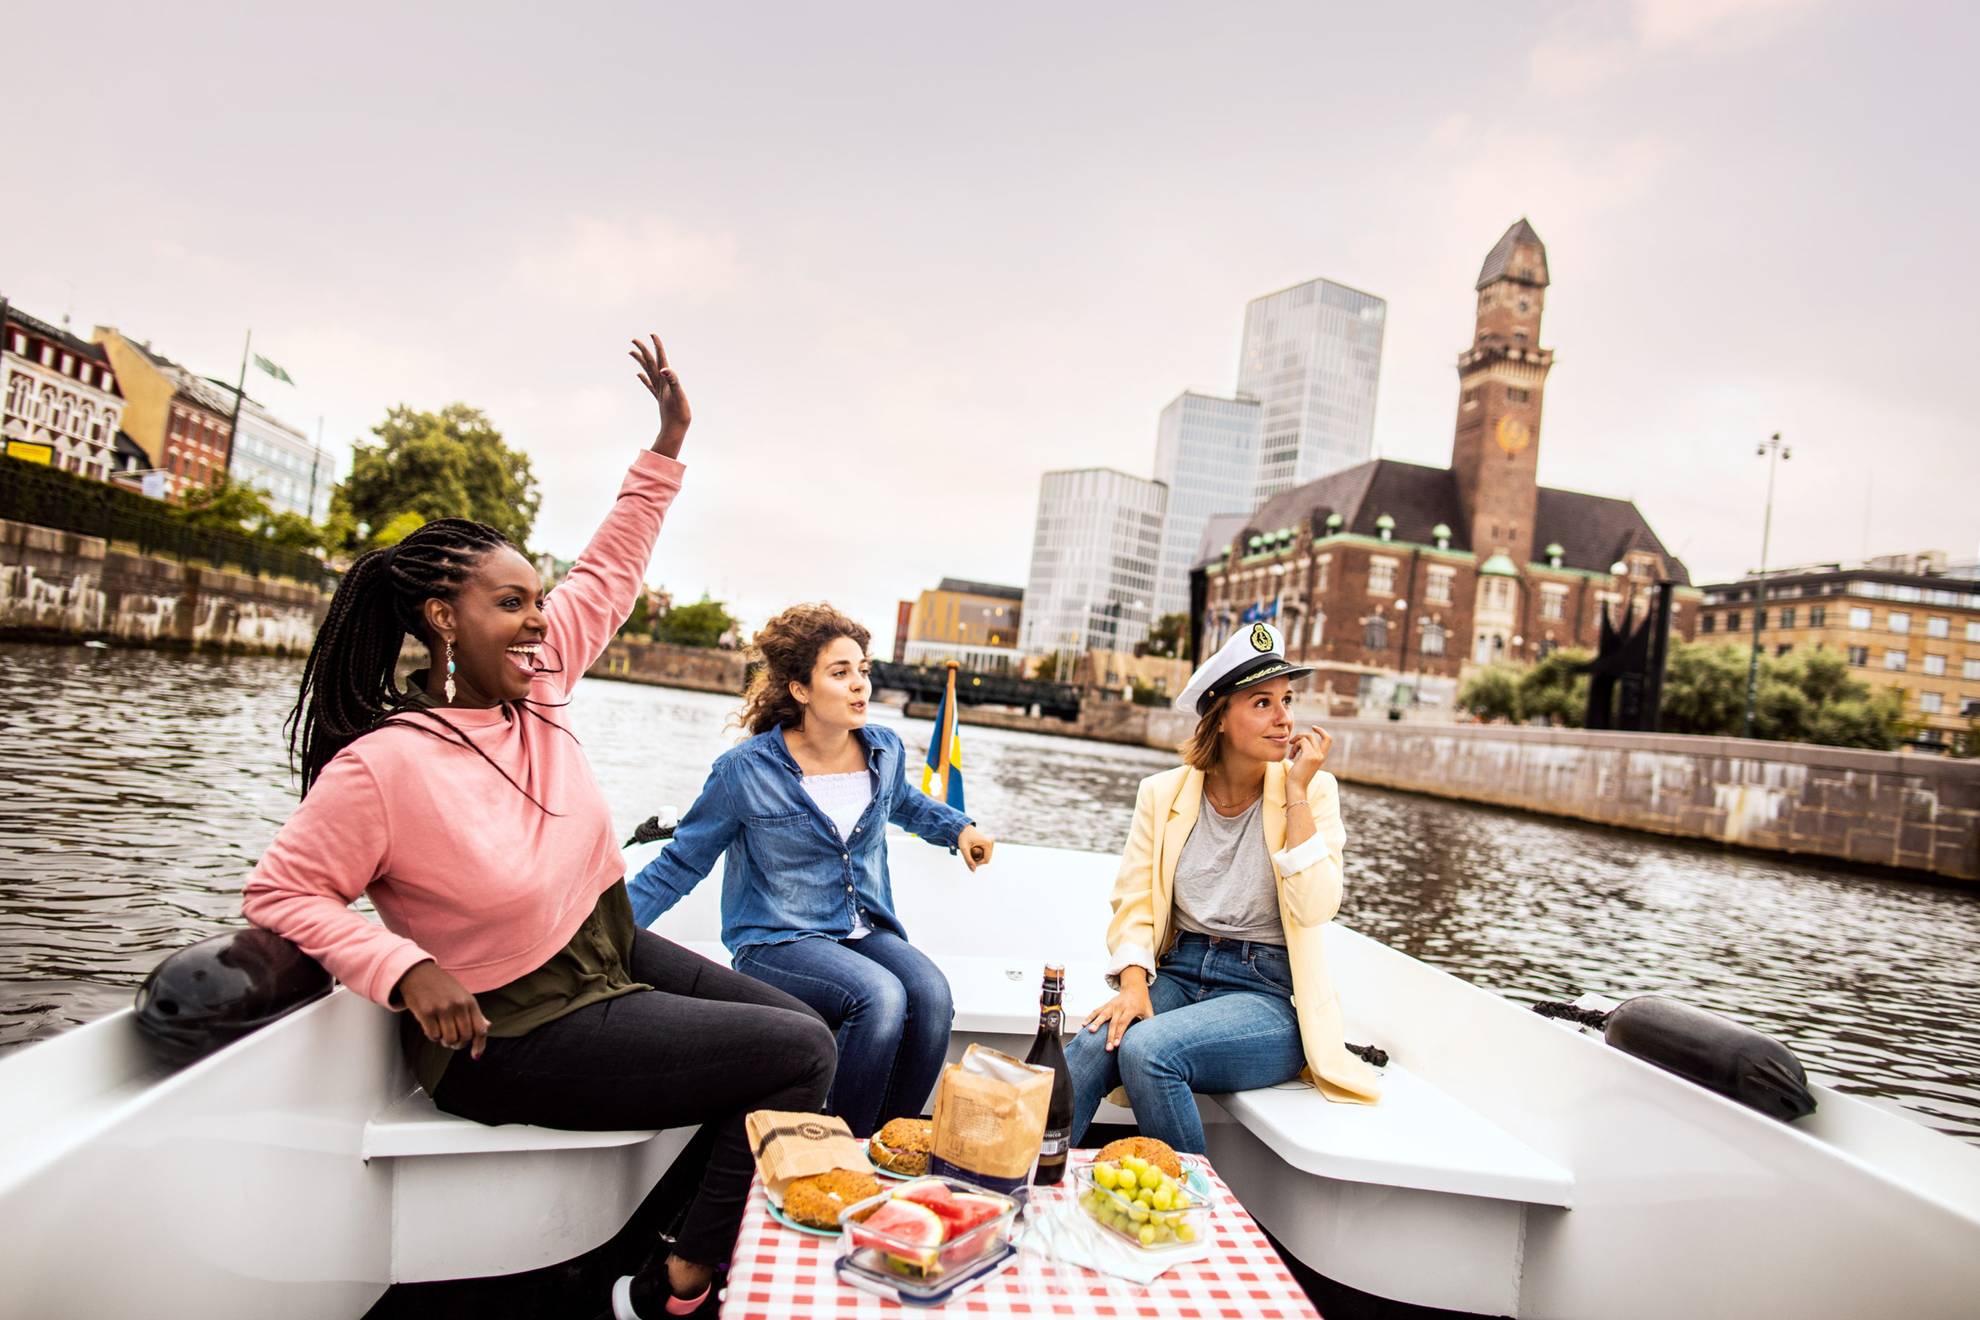 Drei junge, glückliche Frauen bei einem Ausflug in einem Boot auf dem Malmöer Kanal mit Malmö Live und dem Hauptbahnhof im Hintergrund.